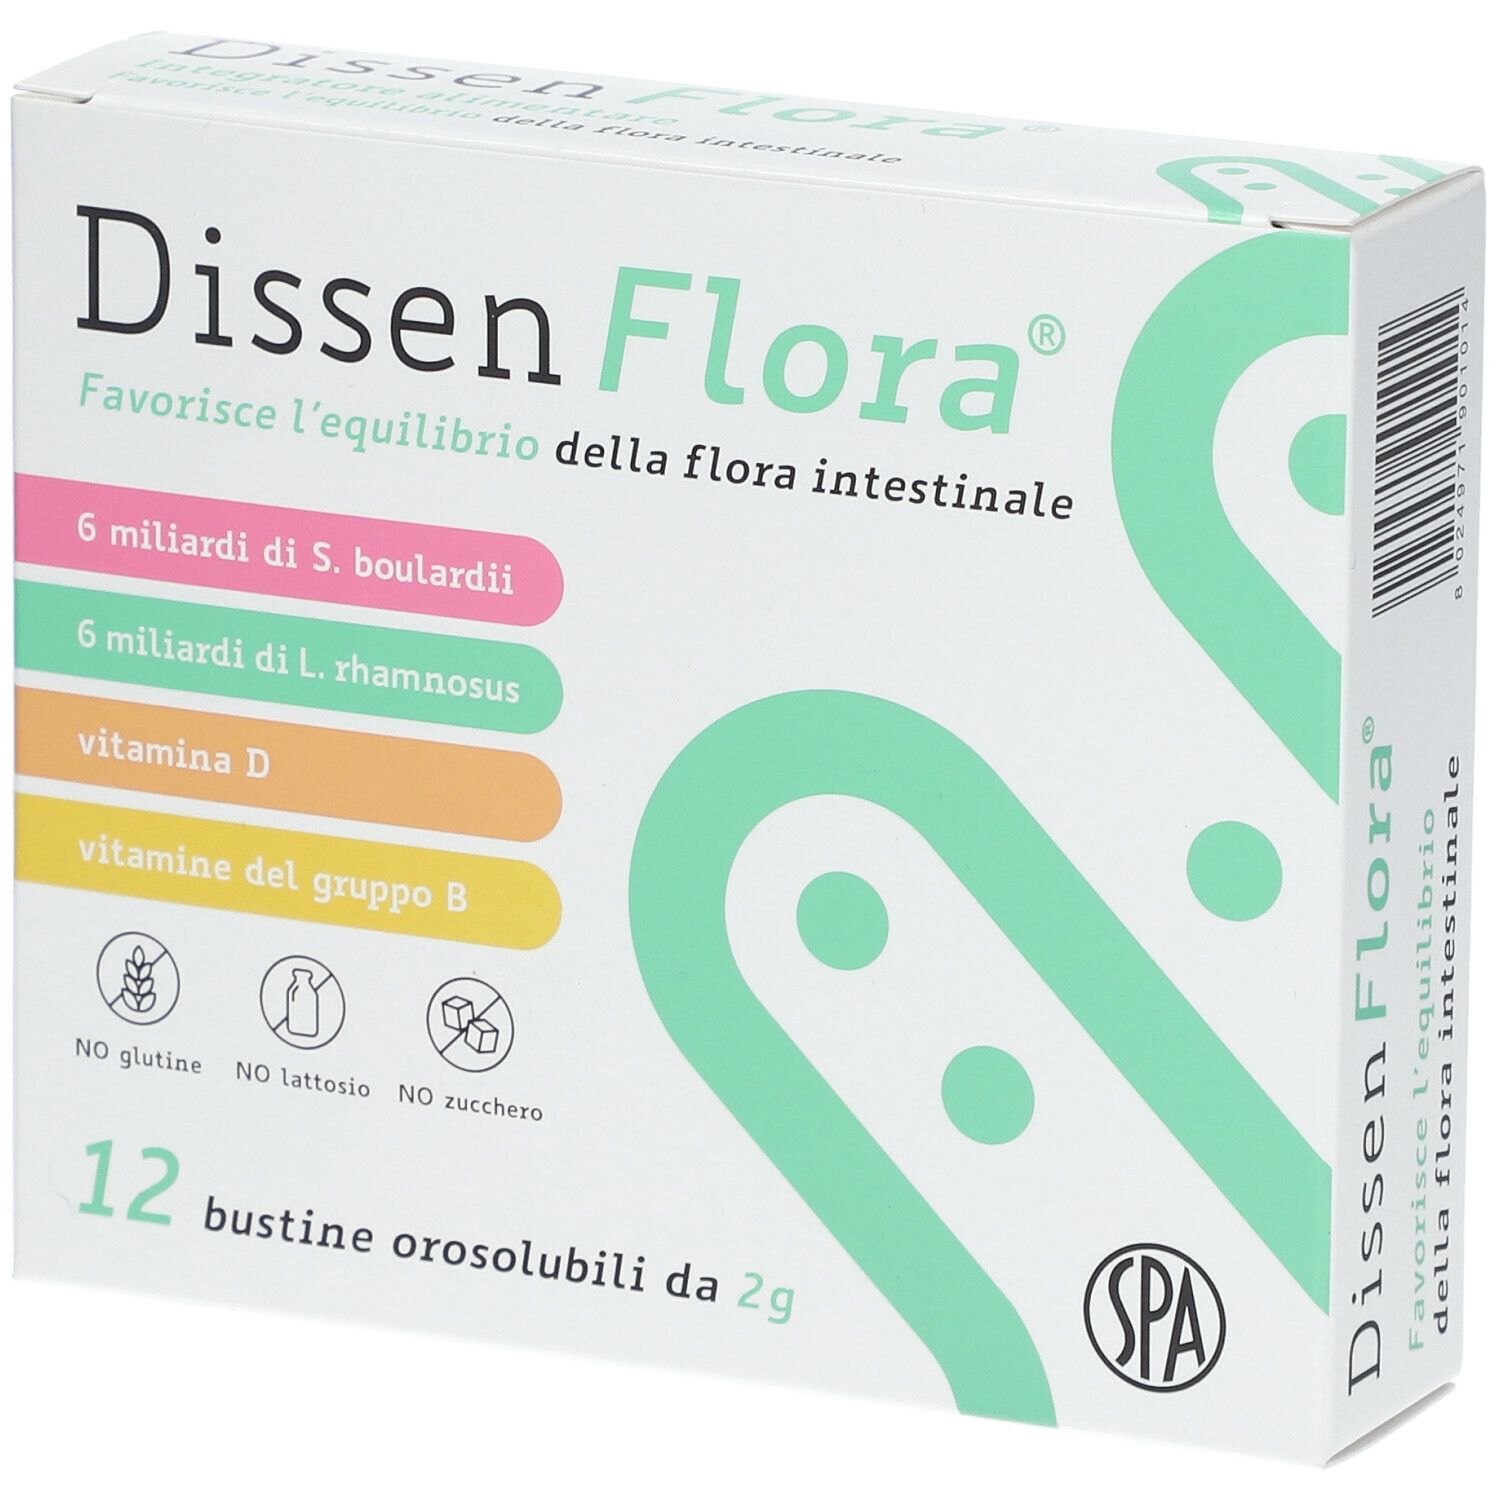 Dissen Flora®